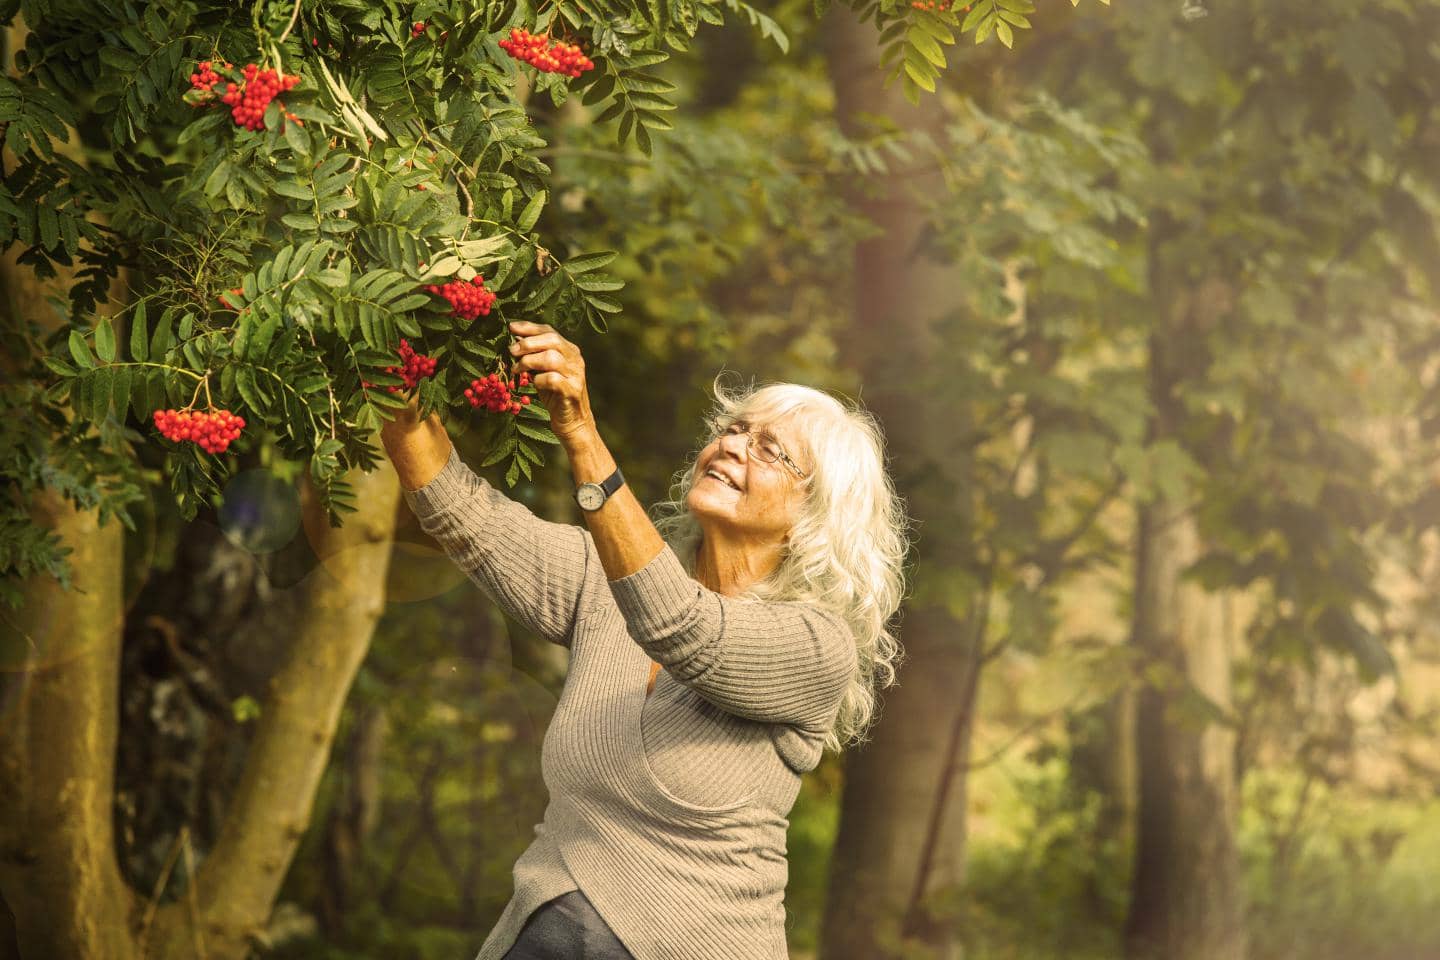 ældre kvinder nyder livet i sin have. Hun har en personforsikring i TJM Forsikring og er godt dækket ift ulykker